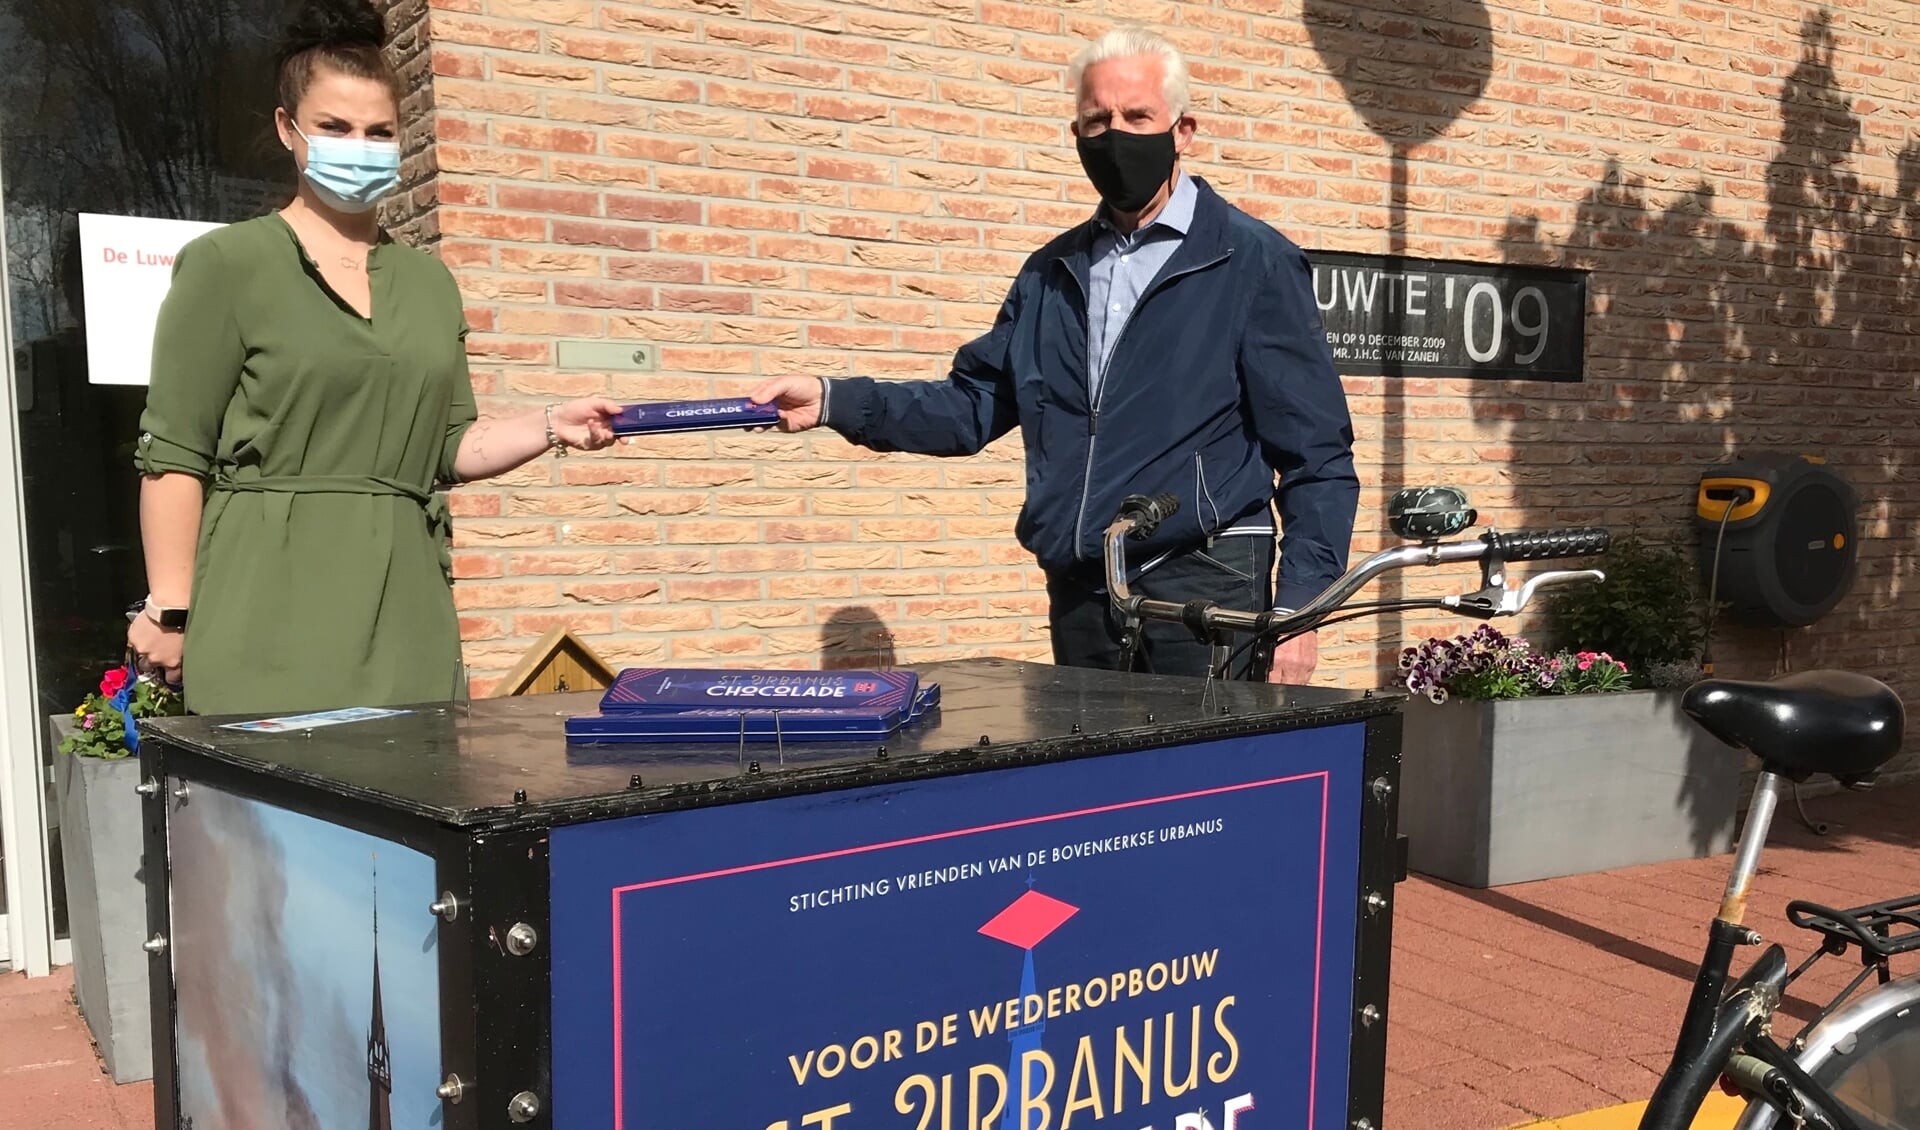 Yael van Egmond neemt het zorgcompliment in ontvangst namens Zonnehuis Amstelland De
Luwte.